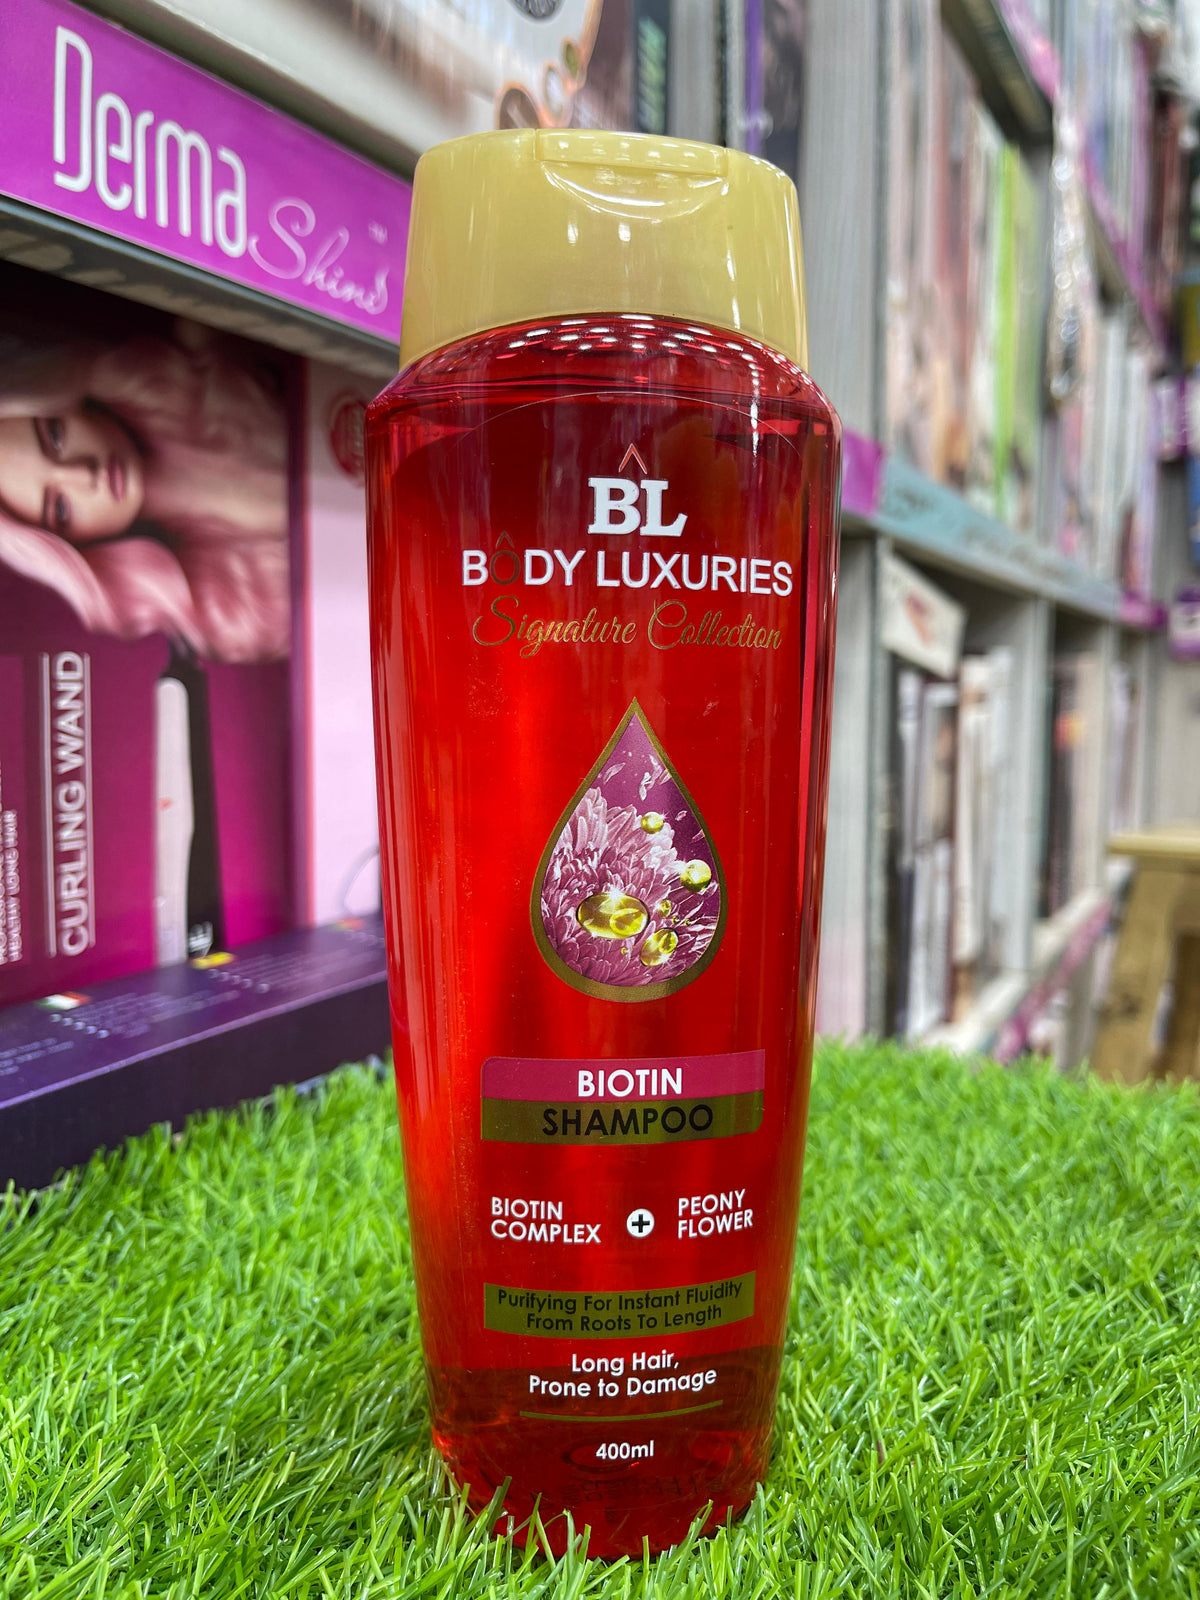 Body luxuries signature Biotin shampoo 400ml